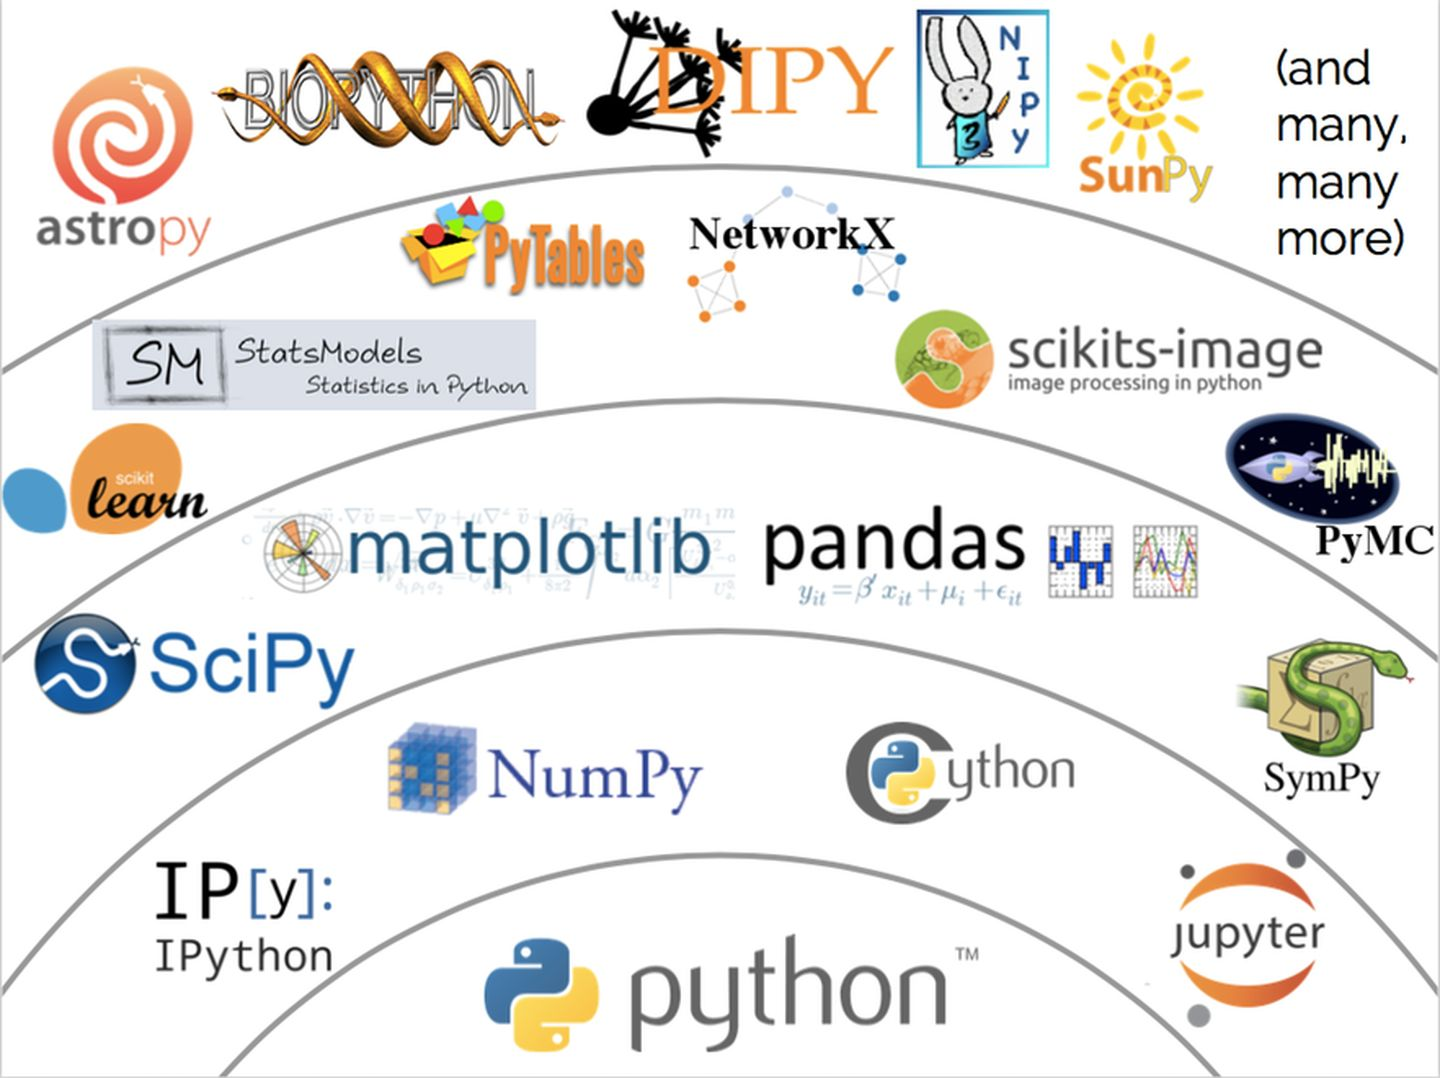 如何系统地学习Python 中 matplotlib, numpy, scipy, pandas？ - 景略集智的回答 - 知乎 https://www.zhihu.com/question/37180159/answer/501189831